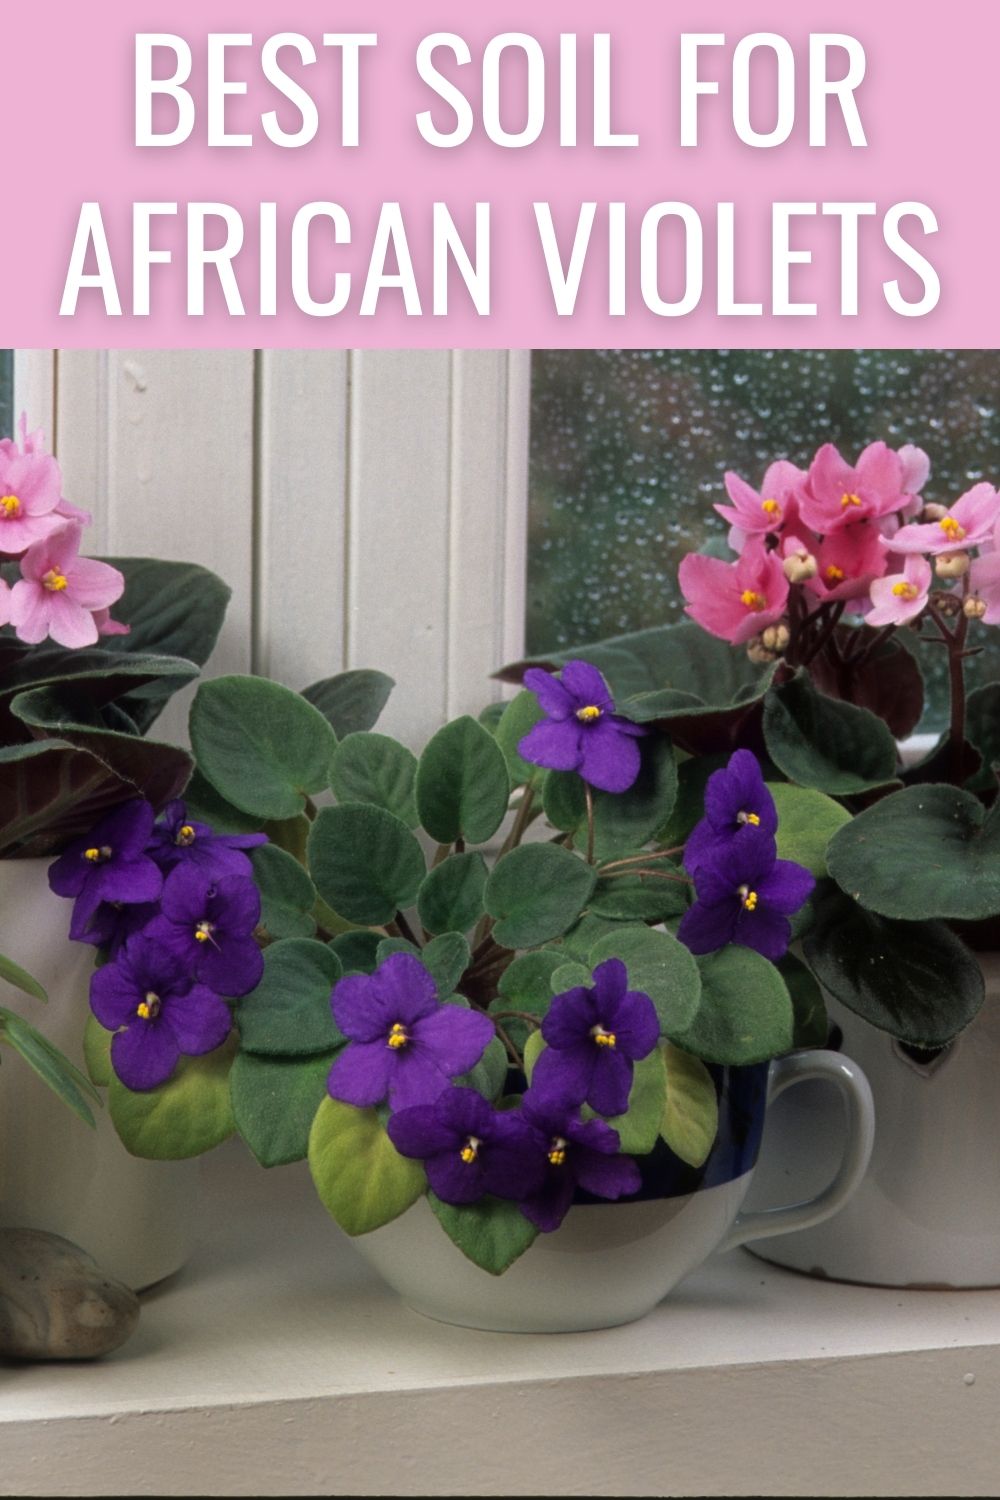 Best soil for African violets